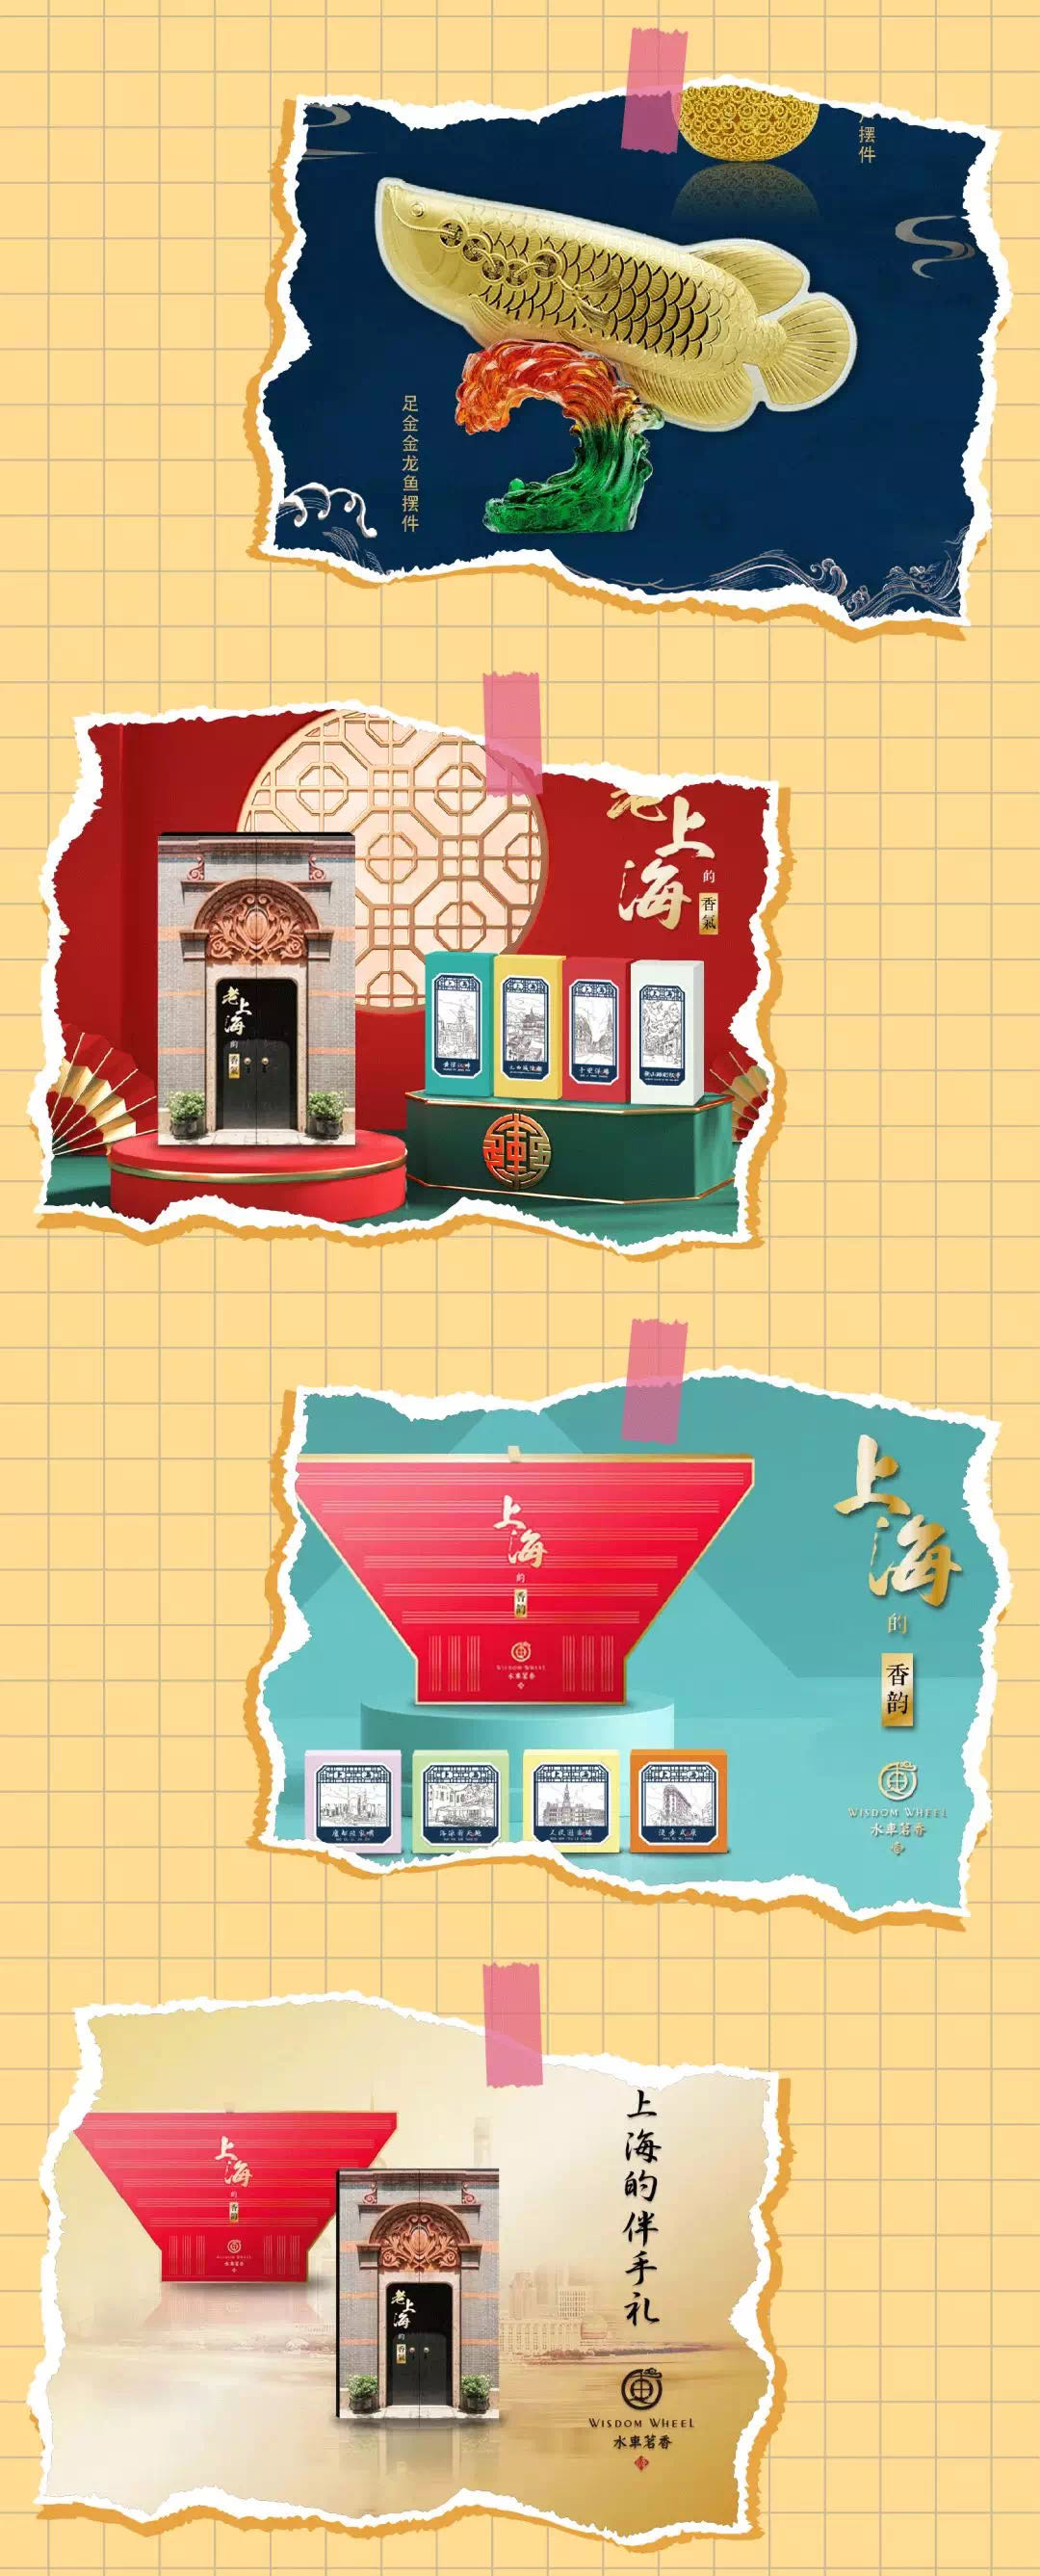 2021上海旅游商品博览会暨长三角文创集市3.jpg